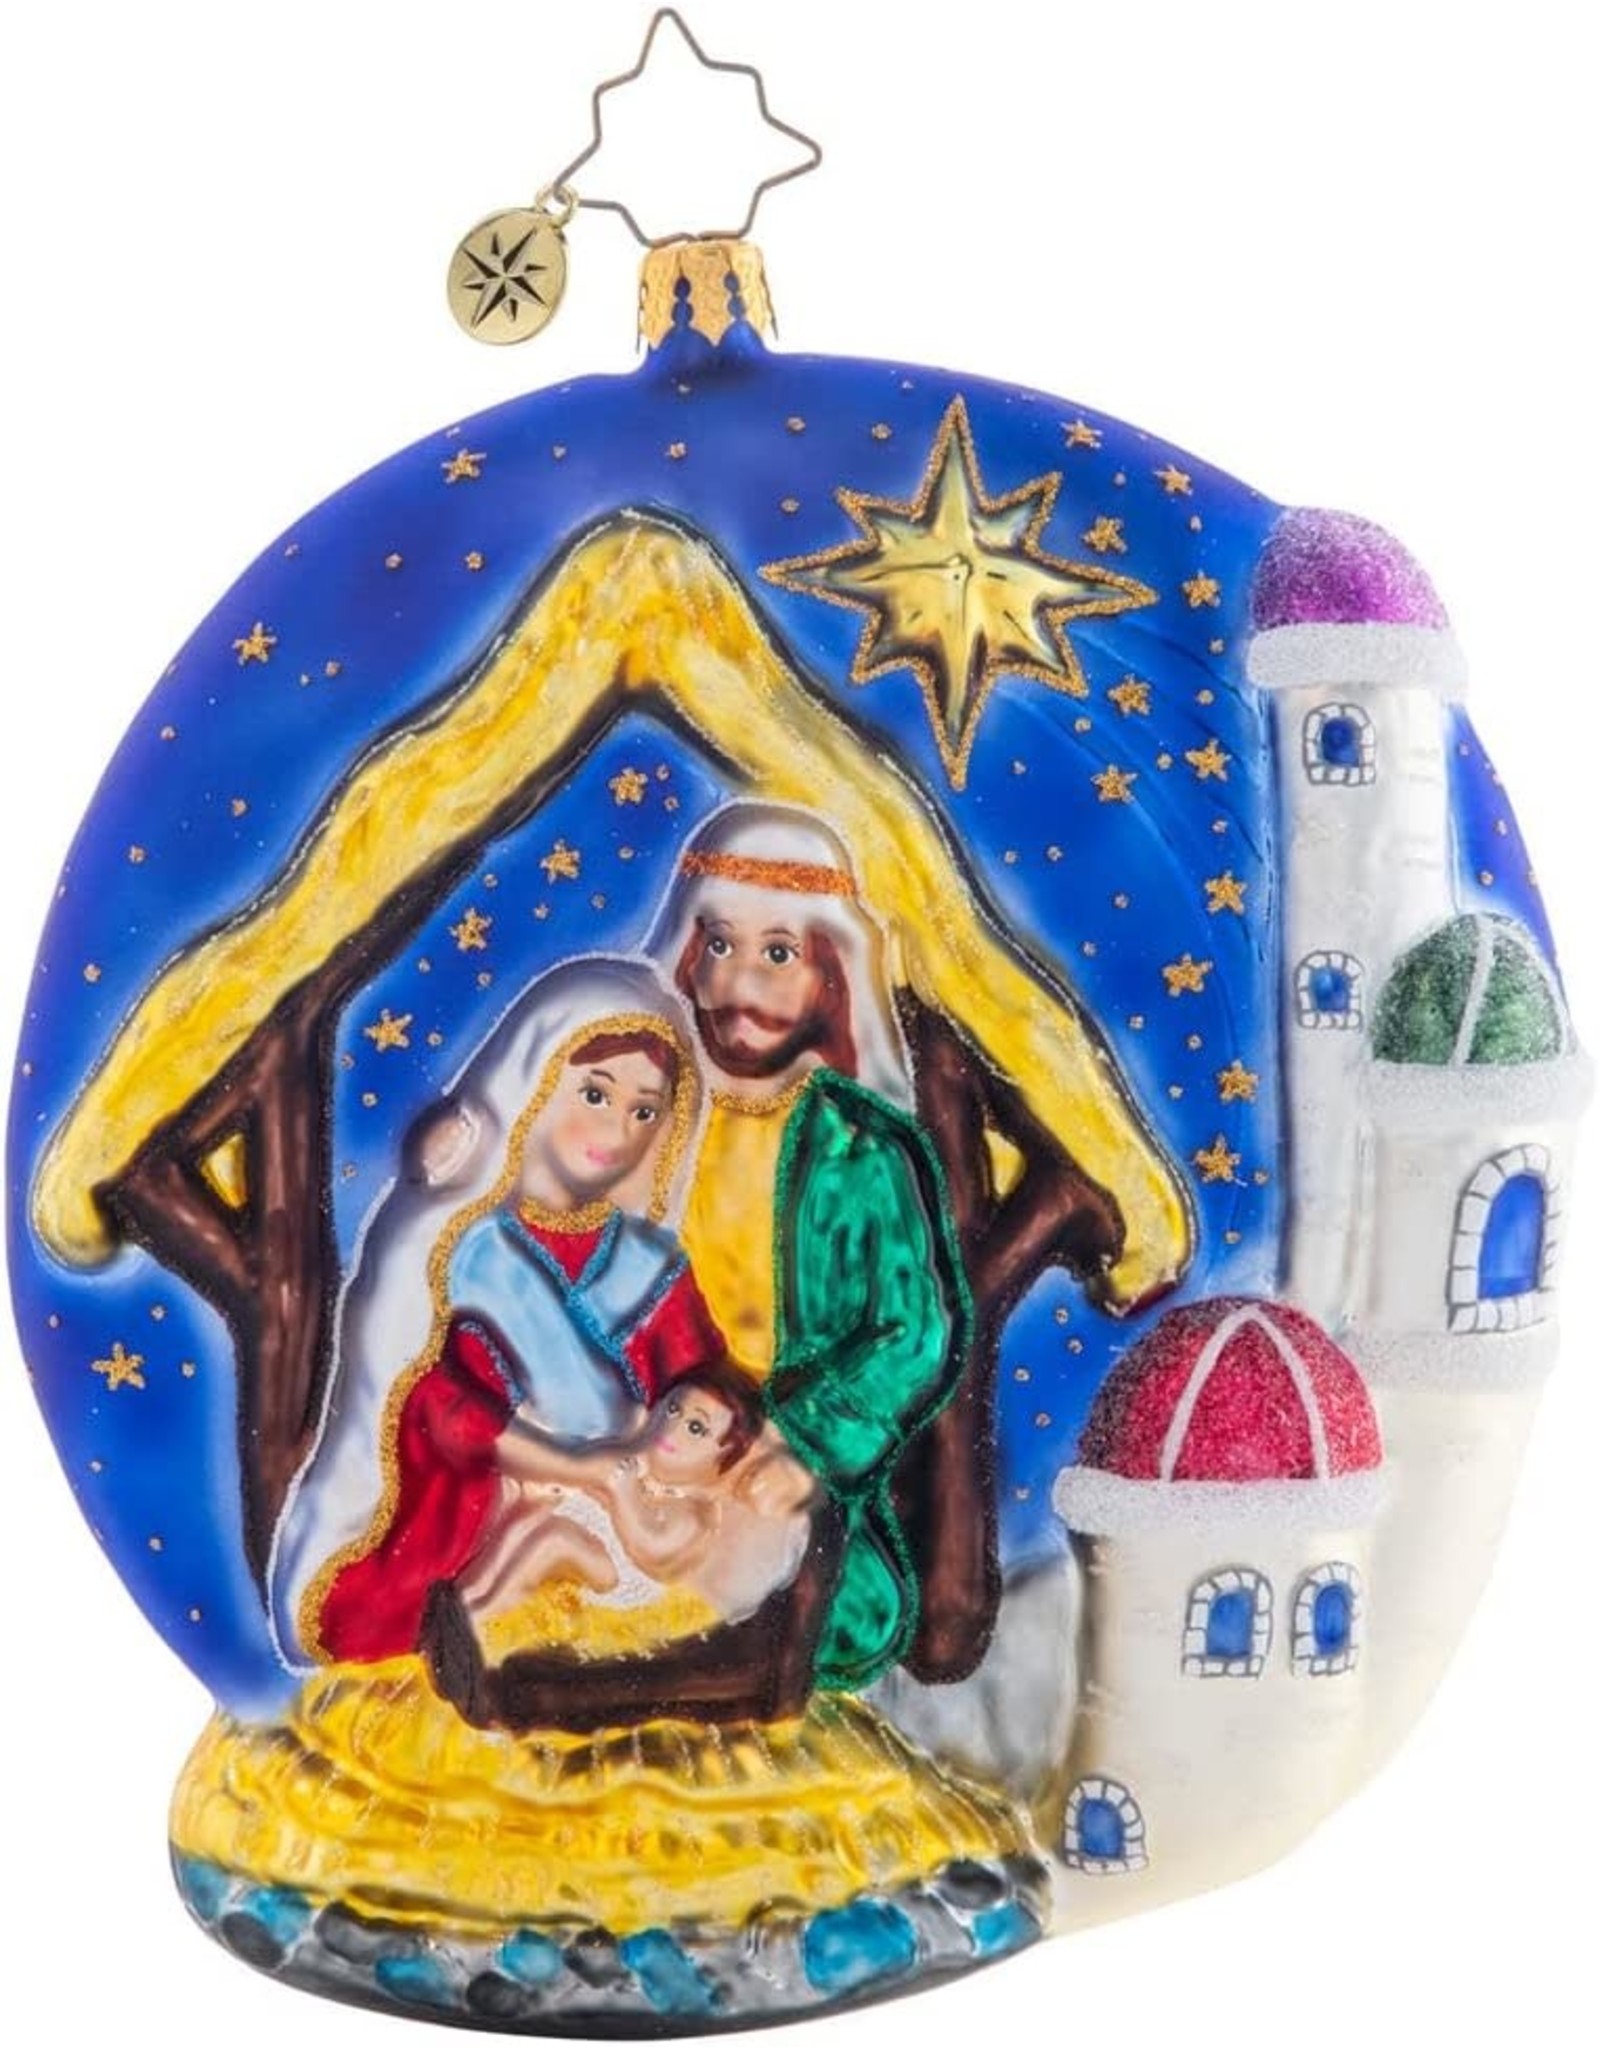 Christopher Radko Oh Holy Night Nativity Scene Ornament 4.5 inch